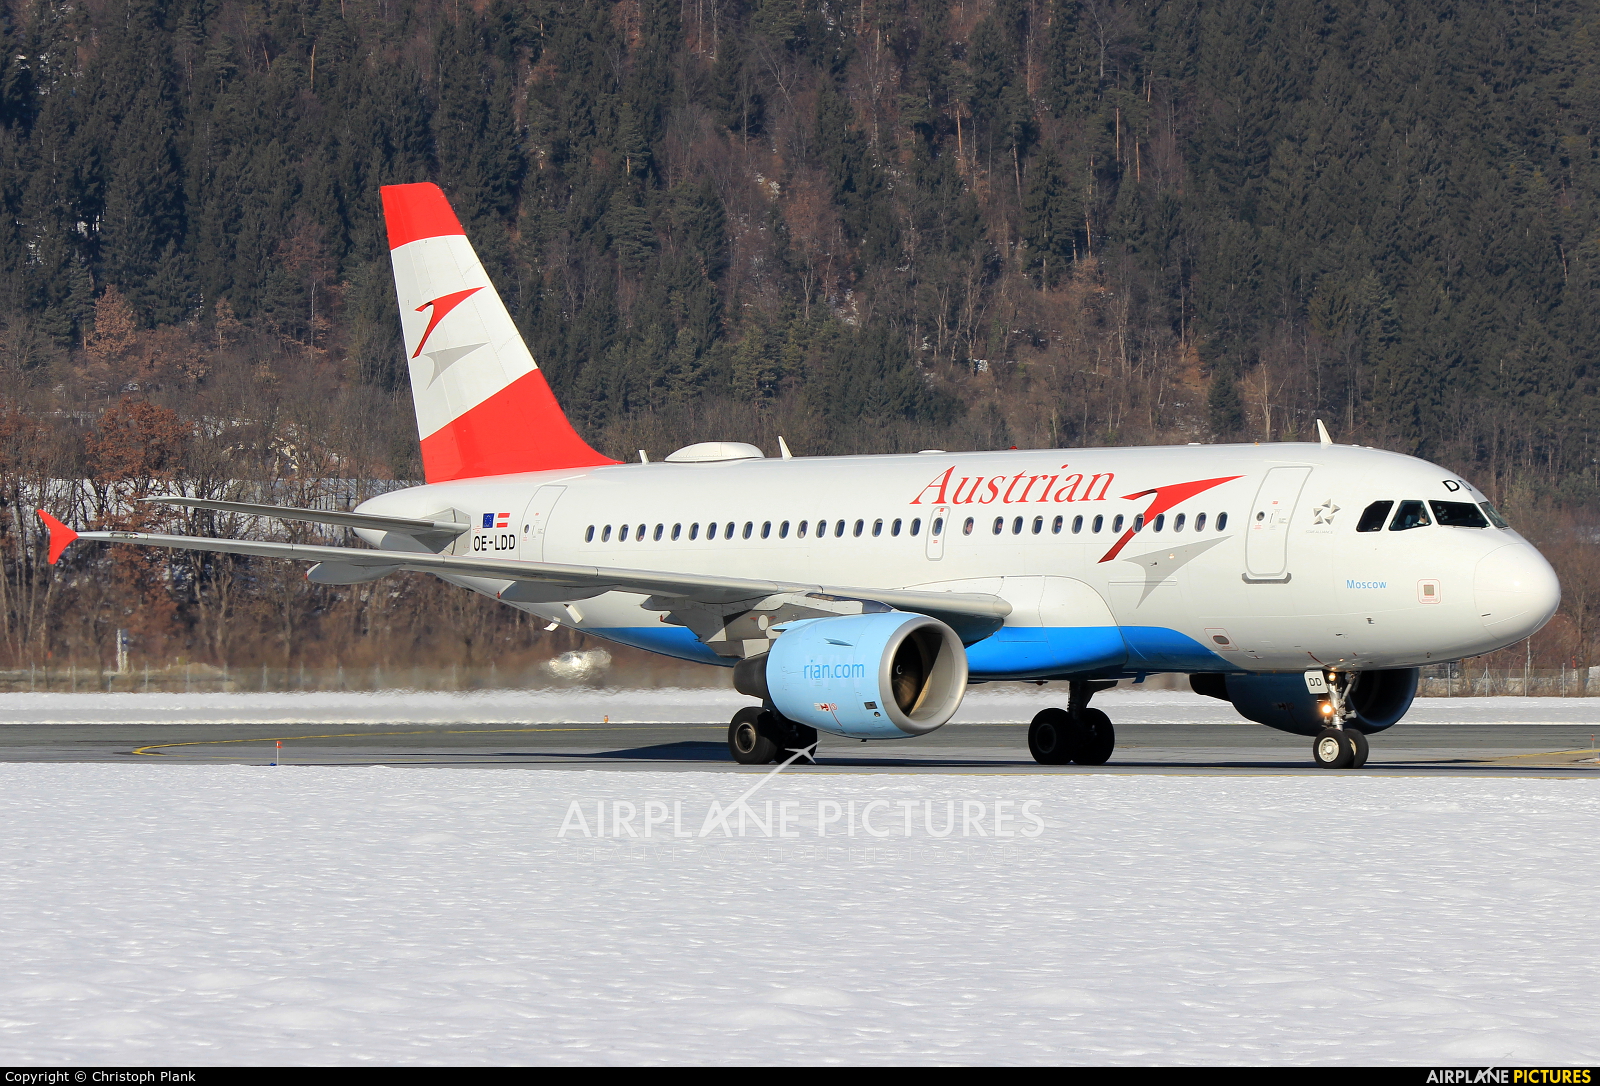 Austrian Airlines/Arrows/Tyrolean OE-LDD aircraft at Innsbruck